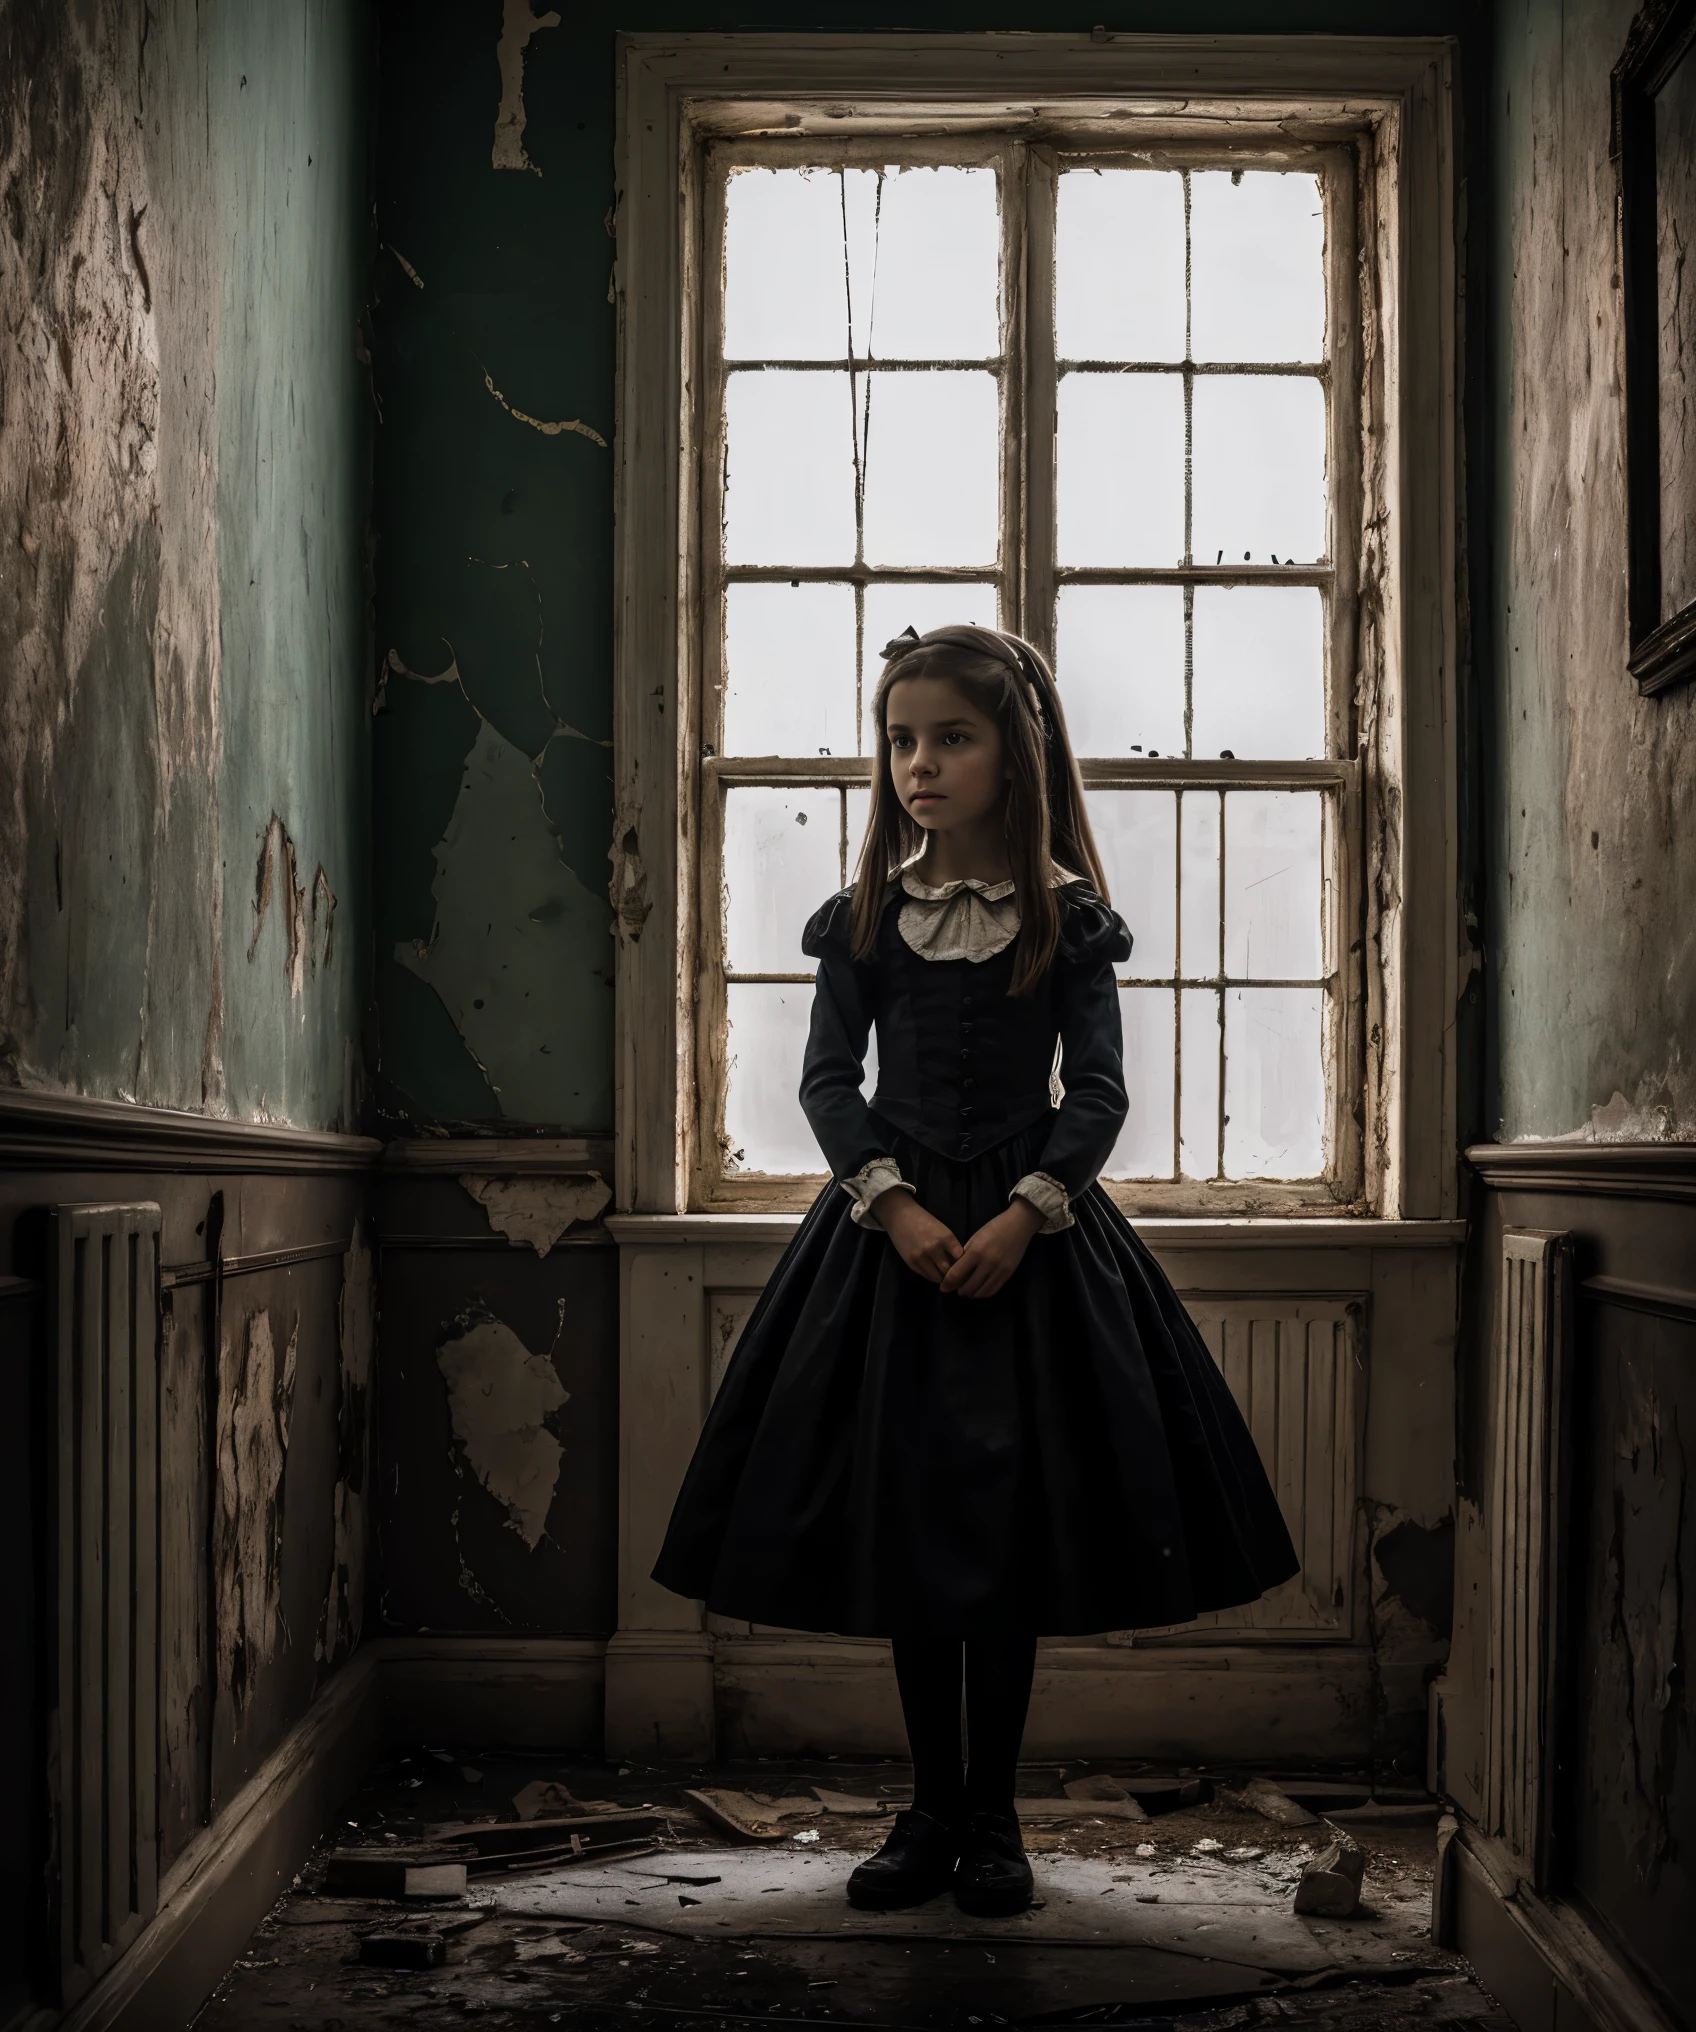 très détaillé, photographie photoréaliste d&#39;une jeune fille dans un asile, Alice de "Les aventures d&#39;Alice au Pays des Merveilles", atmosphère sombre et inquiétante, des détails complexes tels que des murs fissurés et de la peinture écaillée, inspiré des œuvres de Lewis Carroll et Tim Burton.